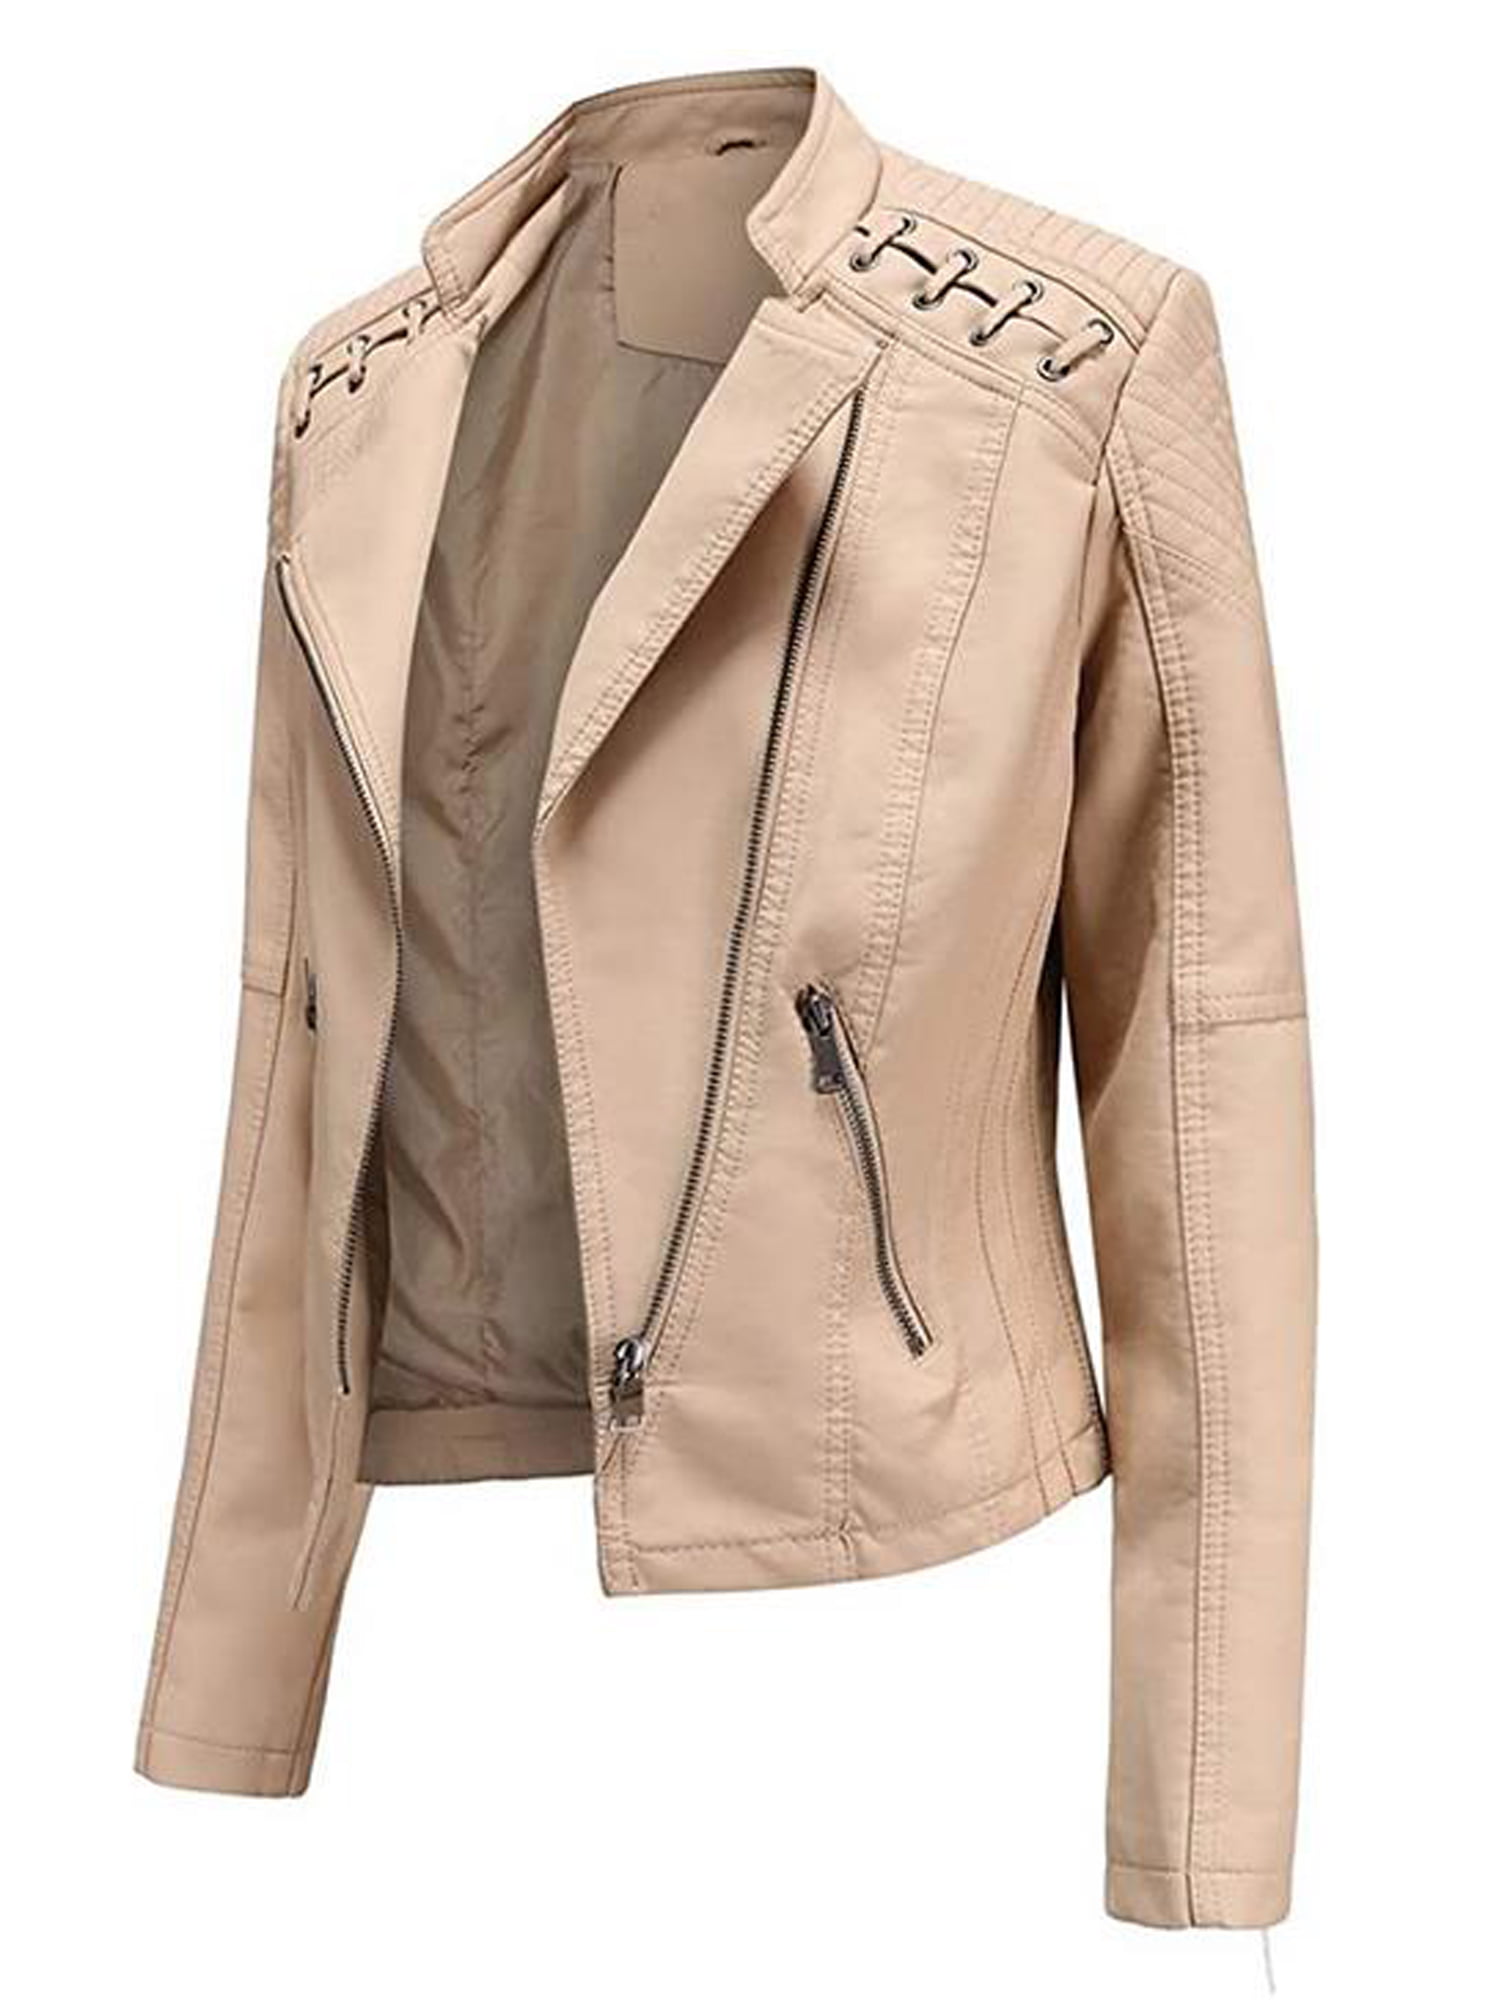 Forwelly Winter Crop Jacket for Women Faux Leather Zipper Jacket Fashion Biker Motorcycle Coat Punk Outwear Tops S-L 